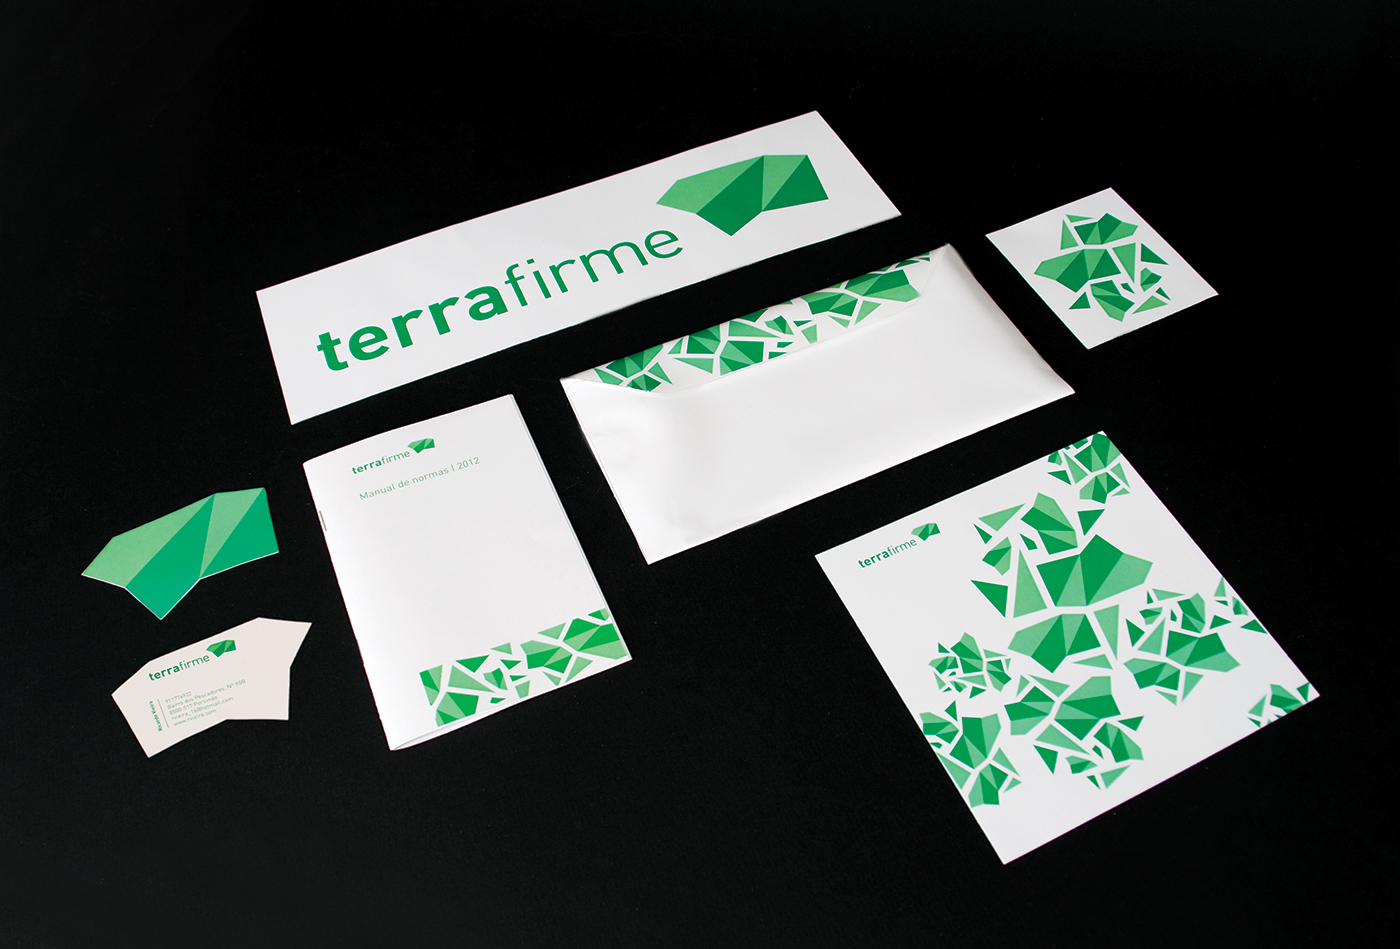 Terrafirme eco-friendly Amigo do Ambiente loja store ecologico green Verde